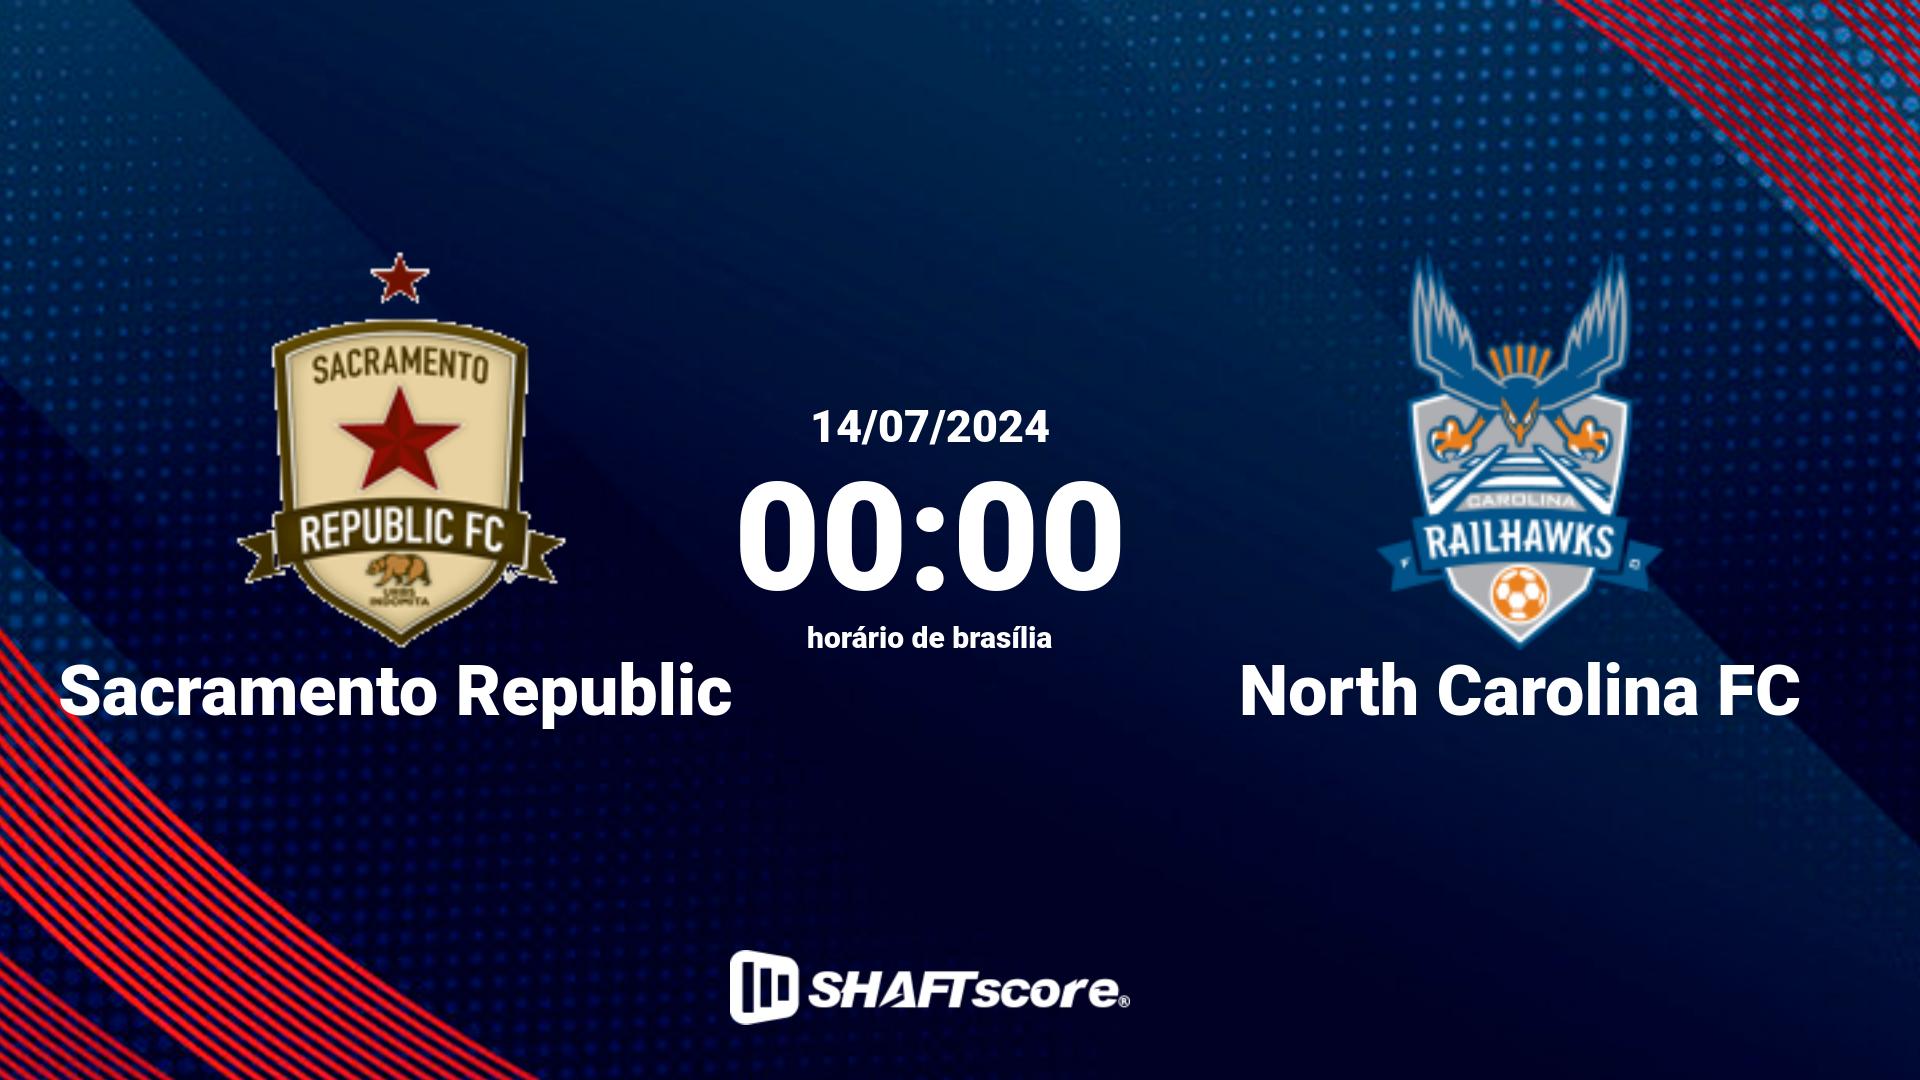 Estatísticas do jogo Sacramento Republic vs North Carolina FC 14.07 00:00